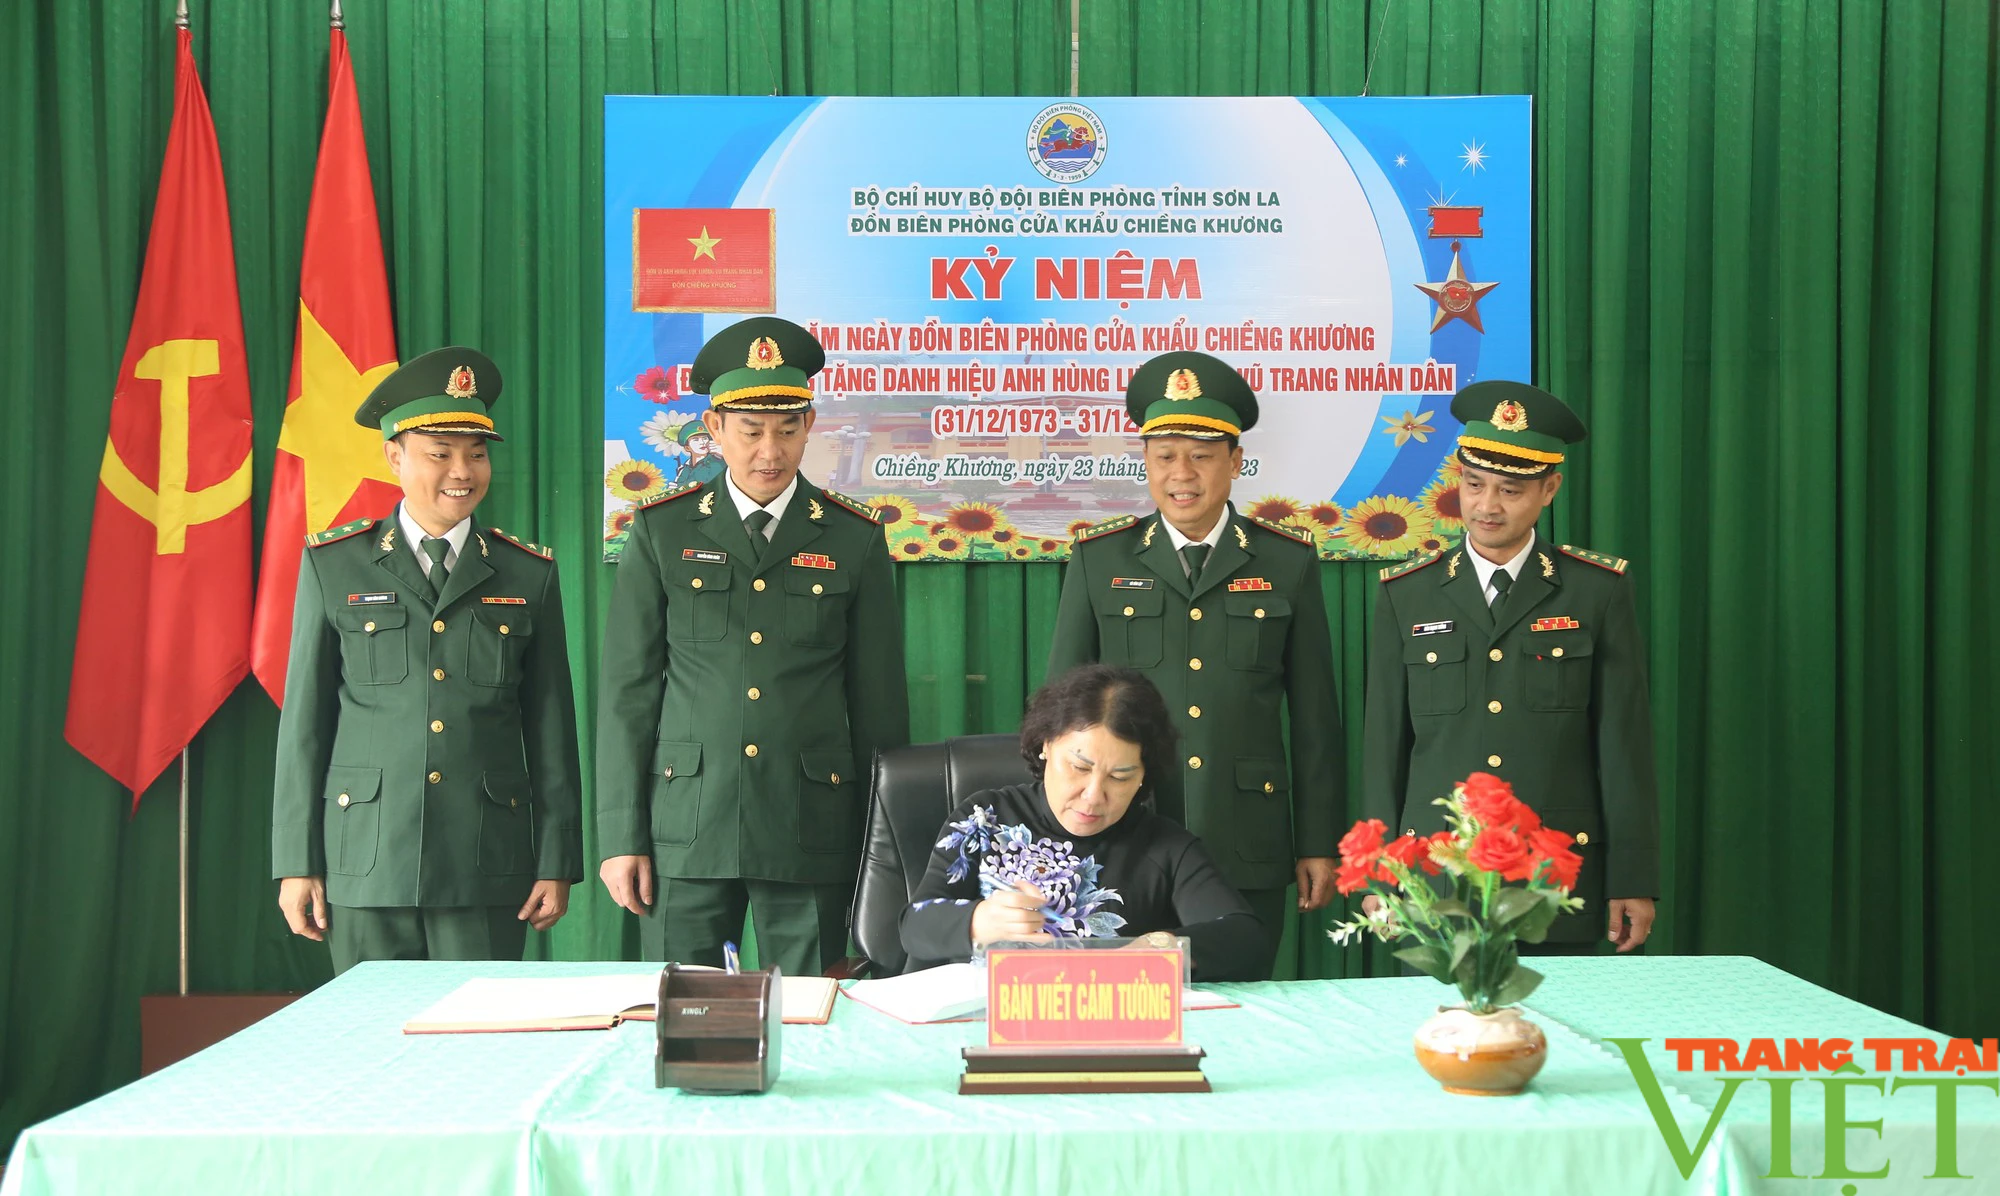 Kỷ niệm 50 năm Đồn Biên phòng cửa khẩu Chiềng Khương được phong tặng Danh hiệu Anh hùng lực lượng vũ trang nhân dân - Ảnh 1.